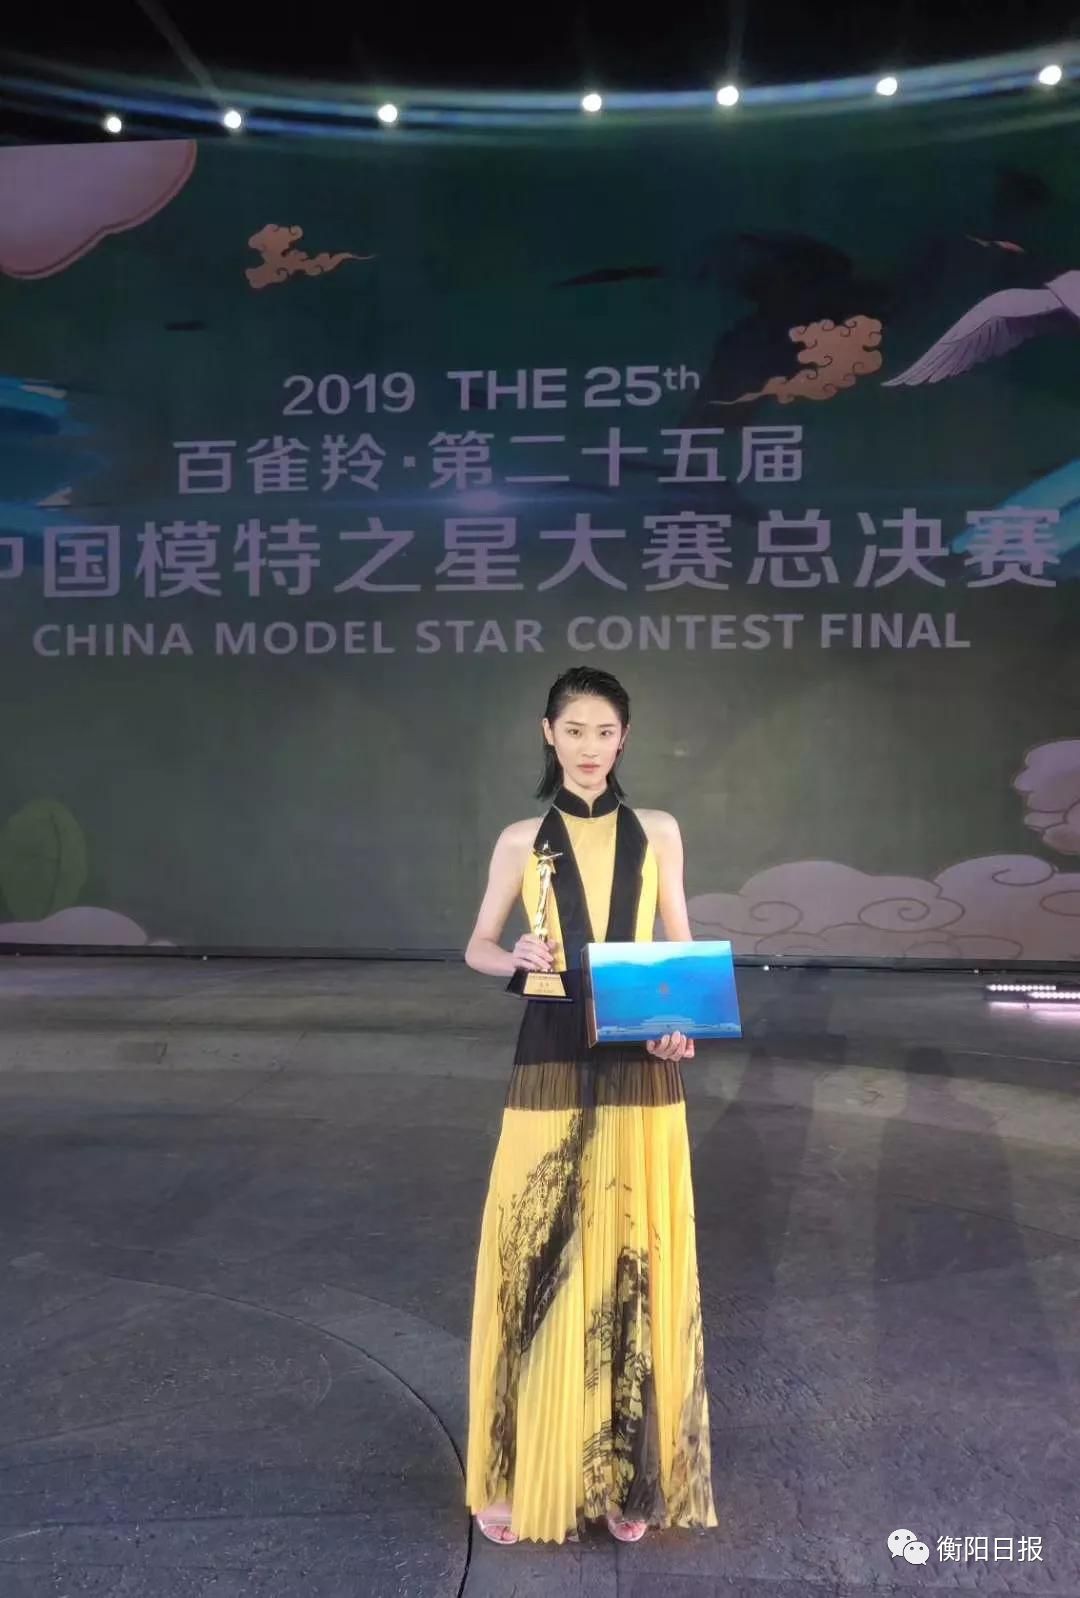 这场中国模特界最权威的大赛 衡阳农村女孩拿下冠军